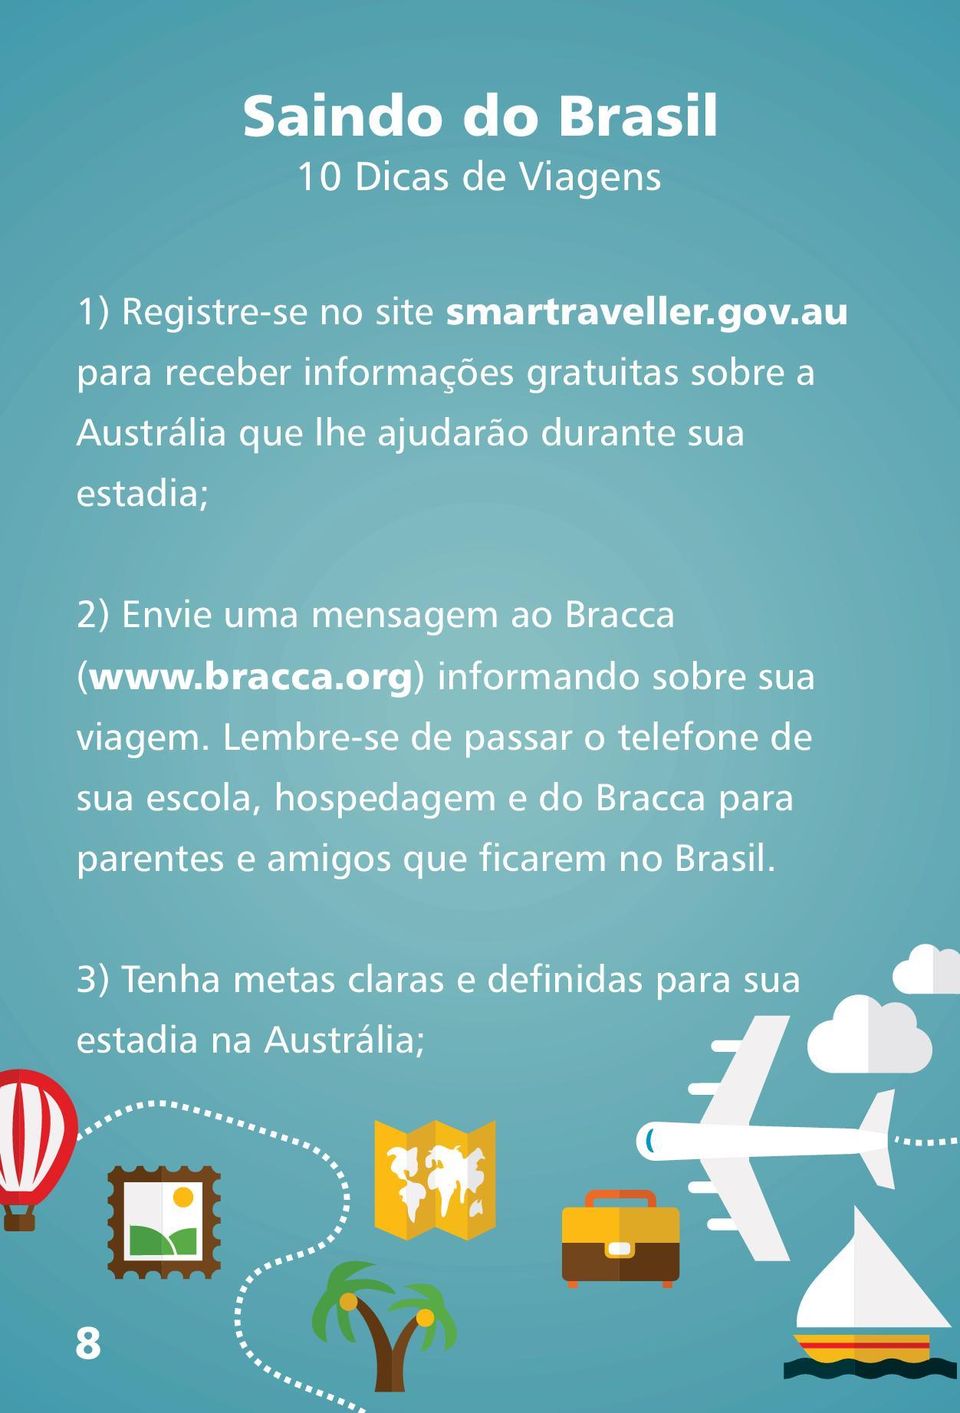 mensagem ao Bracca (www.bracca.org) informando sobre sua viagem.